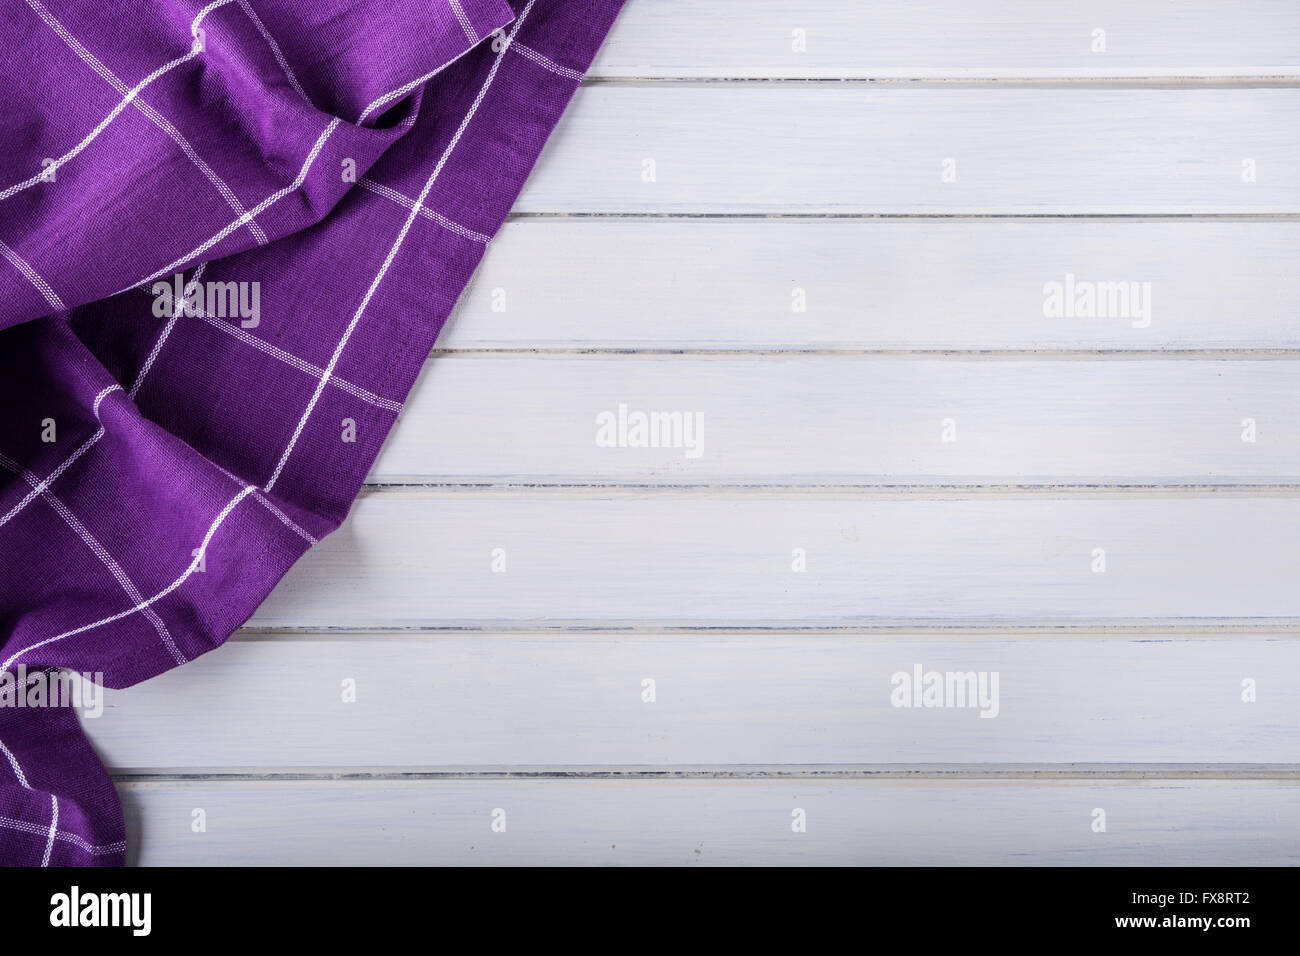 Vue de dessus de cuisine nappe à carreaux violet sur du béton - pierre - marbre - fond de bois. Espace libre pour votre texte ou pr Banque D'Images